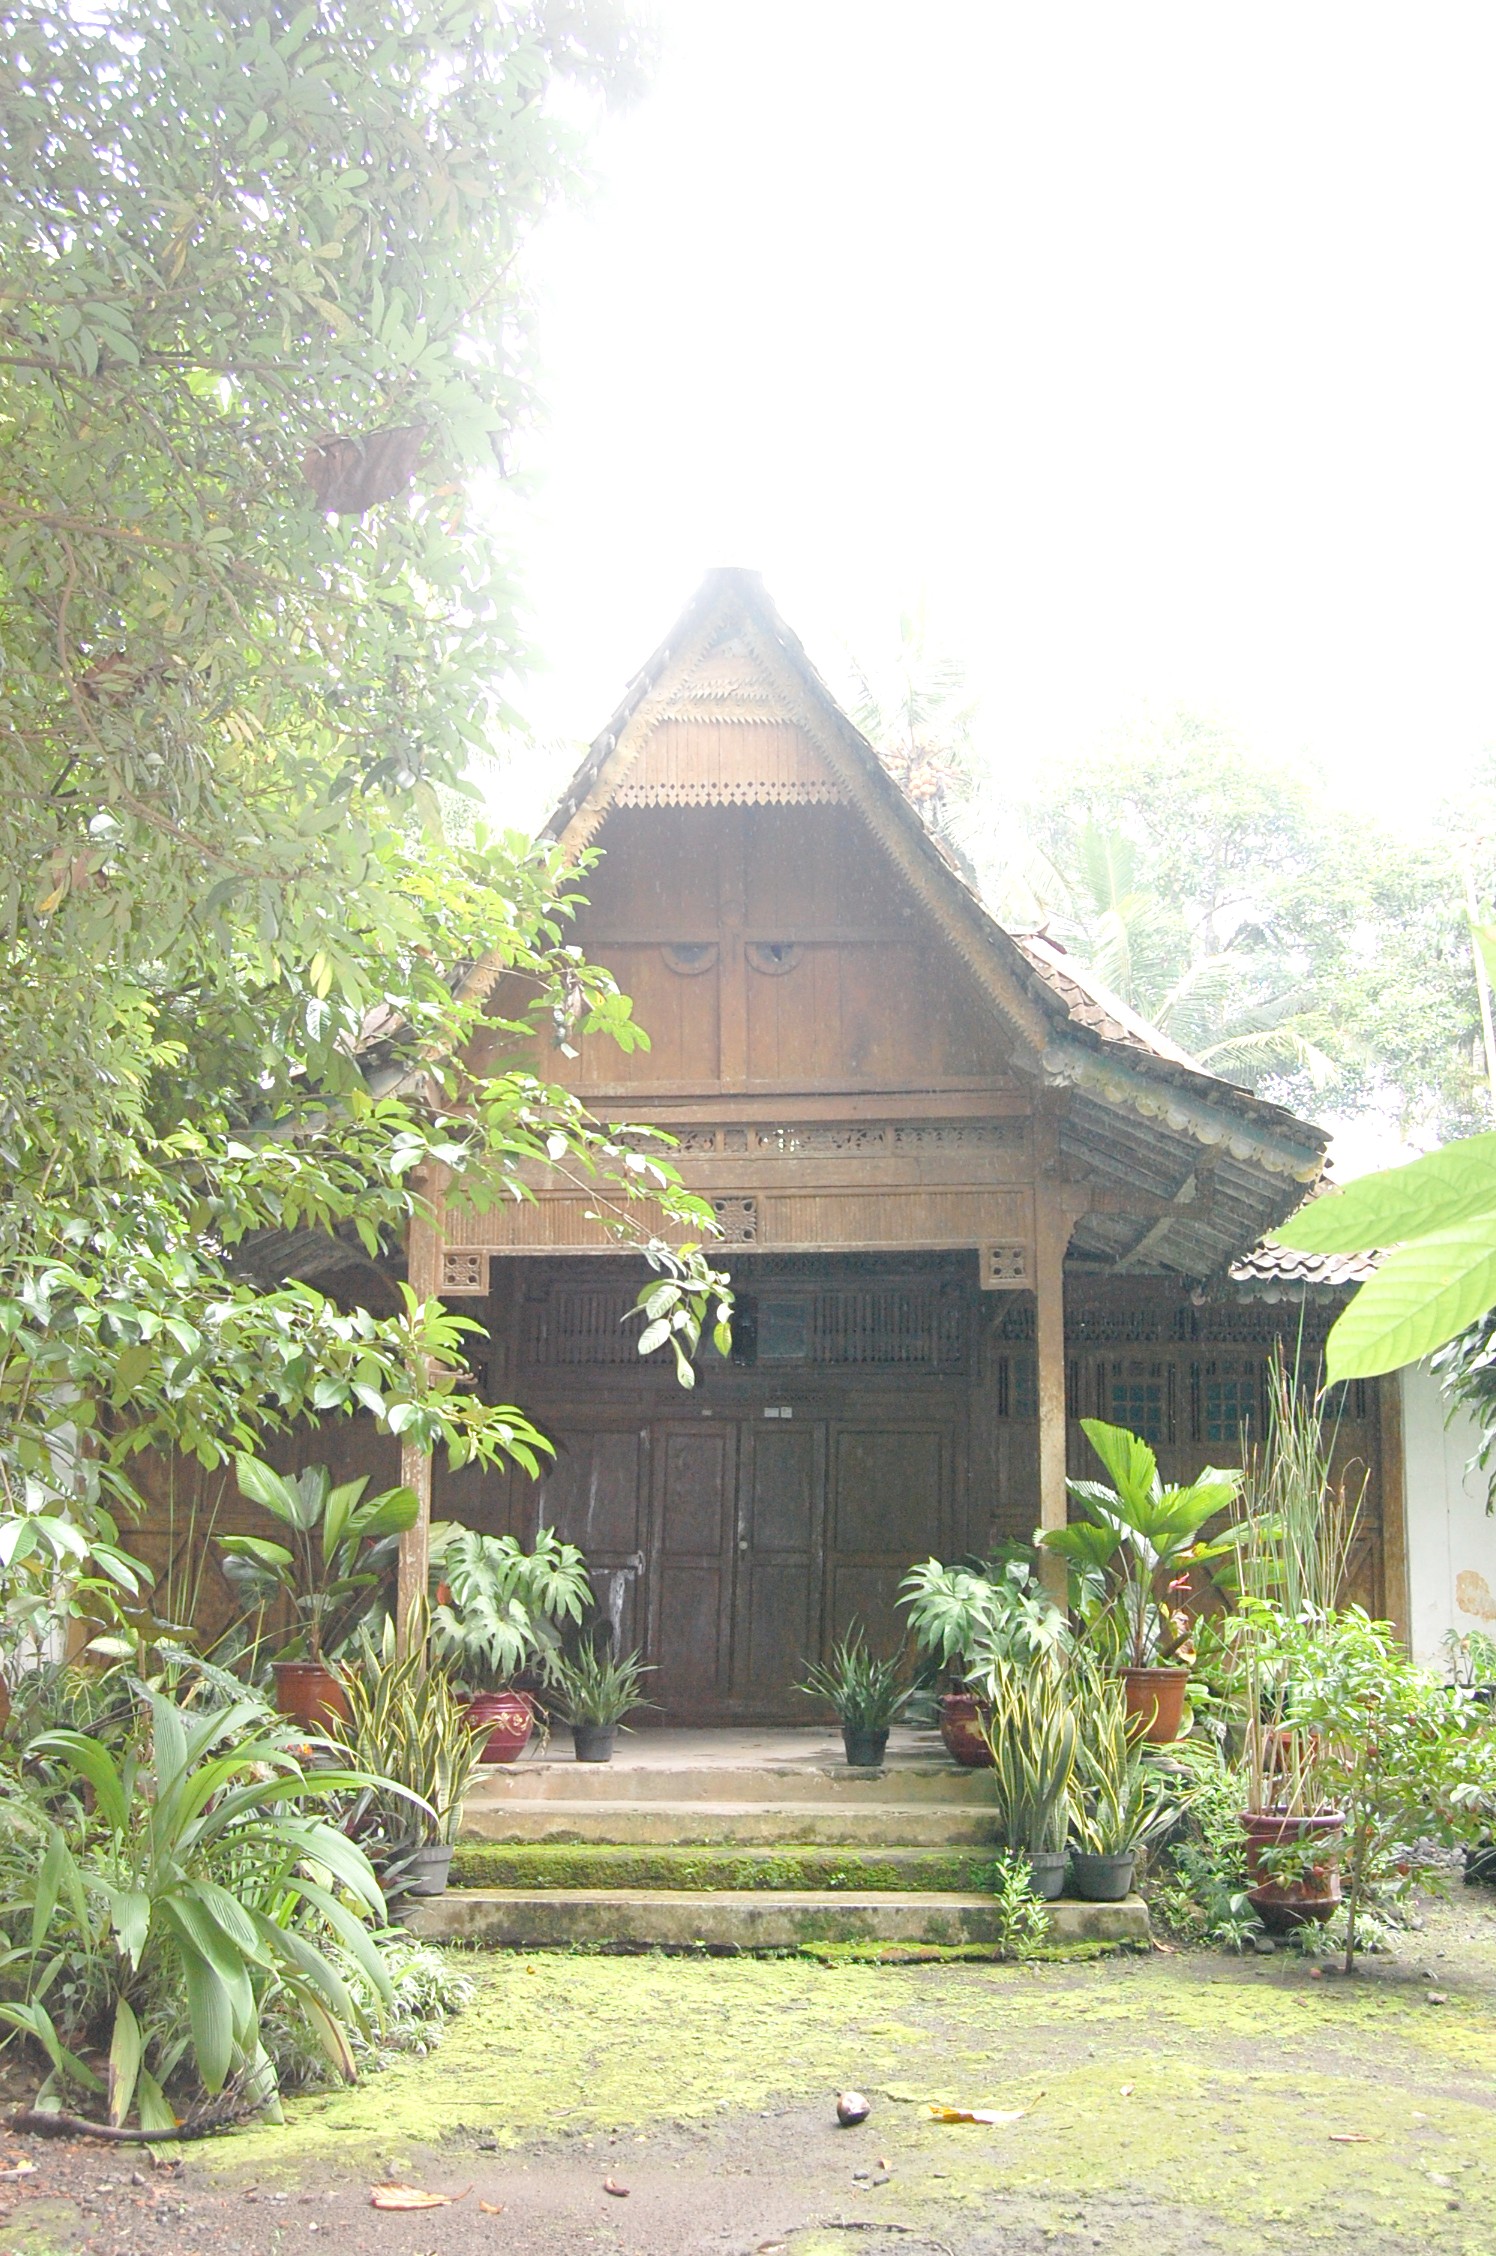 Rumah Adat  Kebudayaan Indonesia